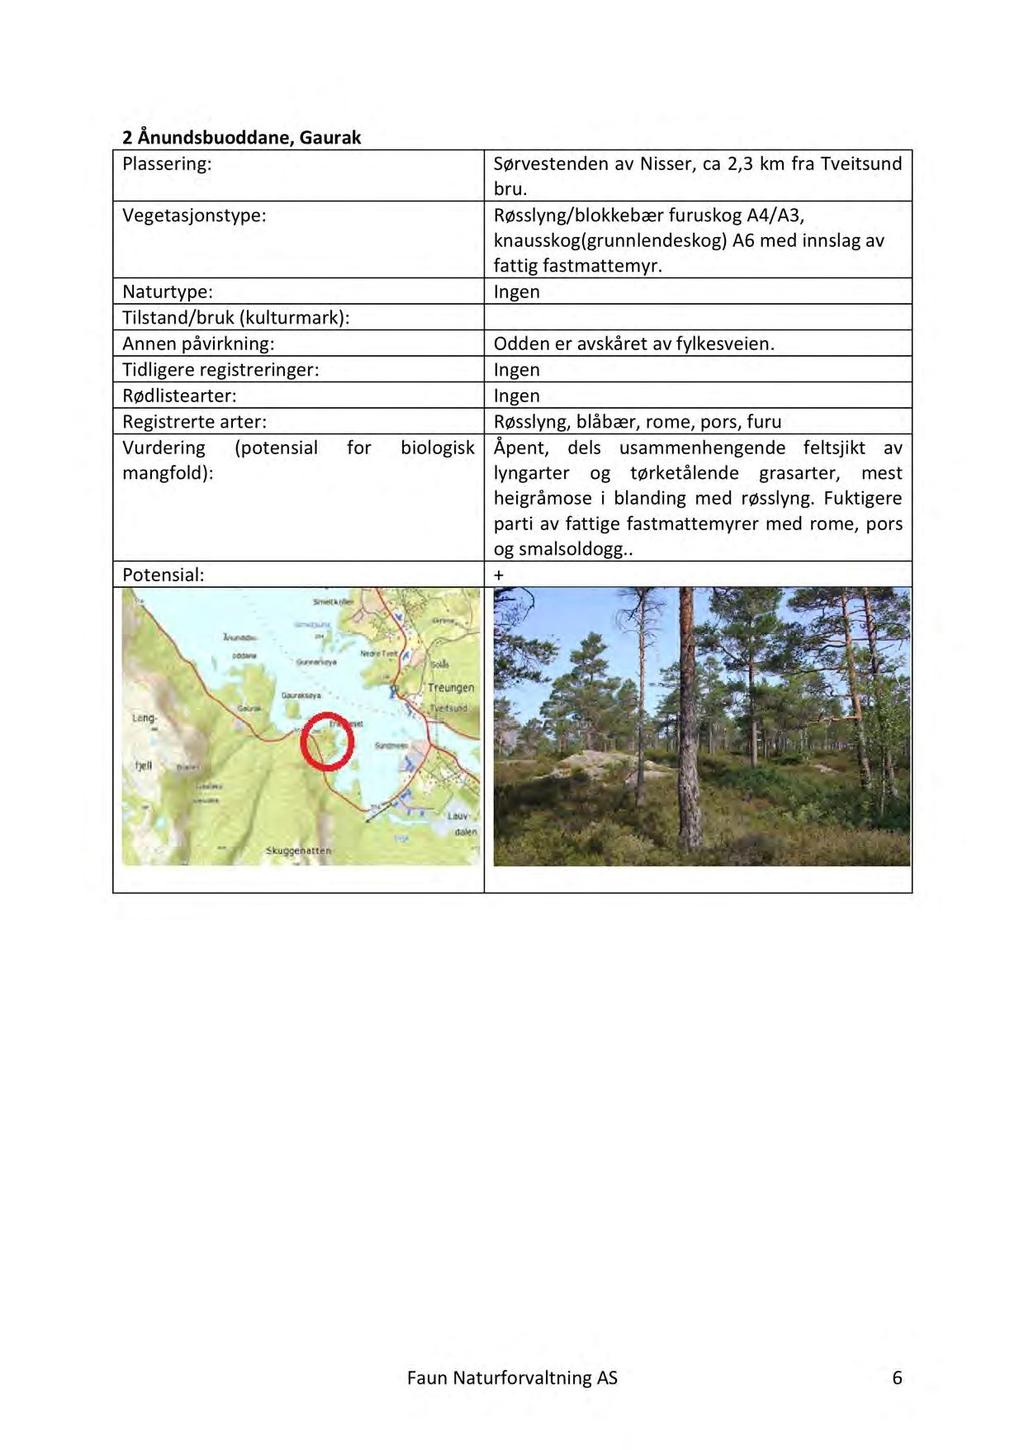 2Ånundsbuoddane,Gaurak Registrertearter: Vurdering (potensial for biologisk SørvestendenavNisser,ca2,3km fra Tveitsund bru.